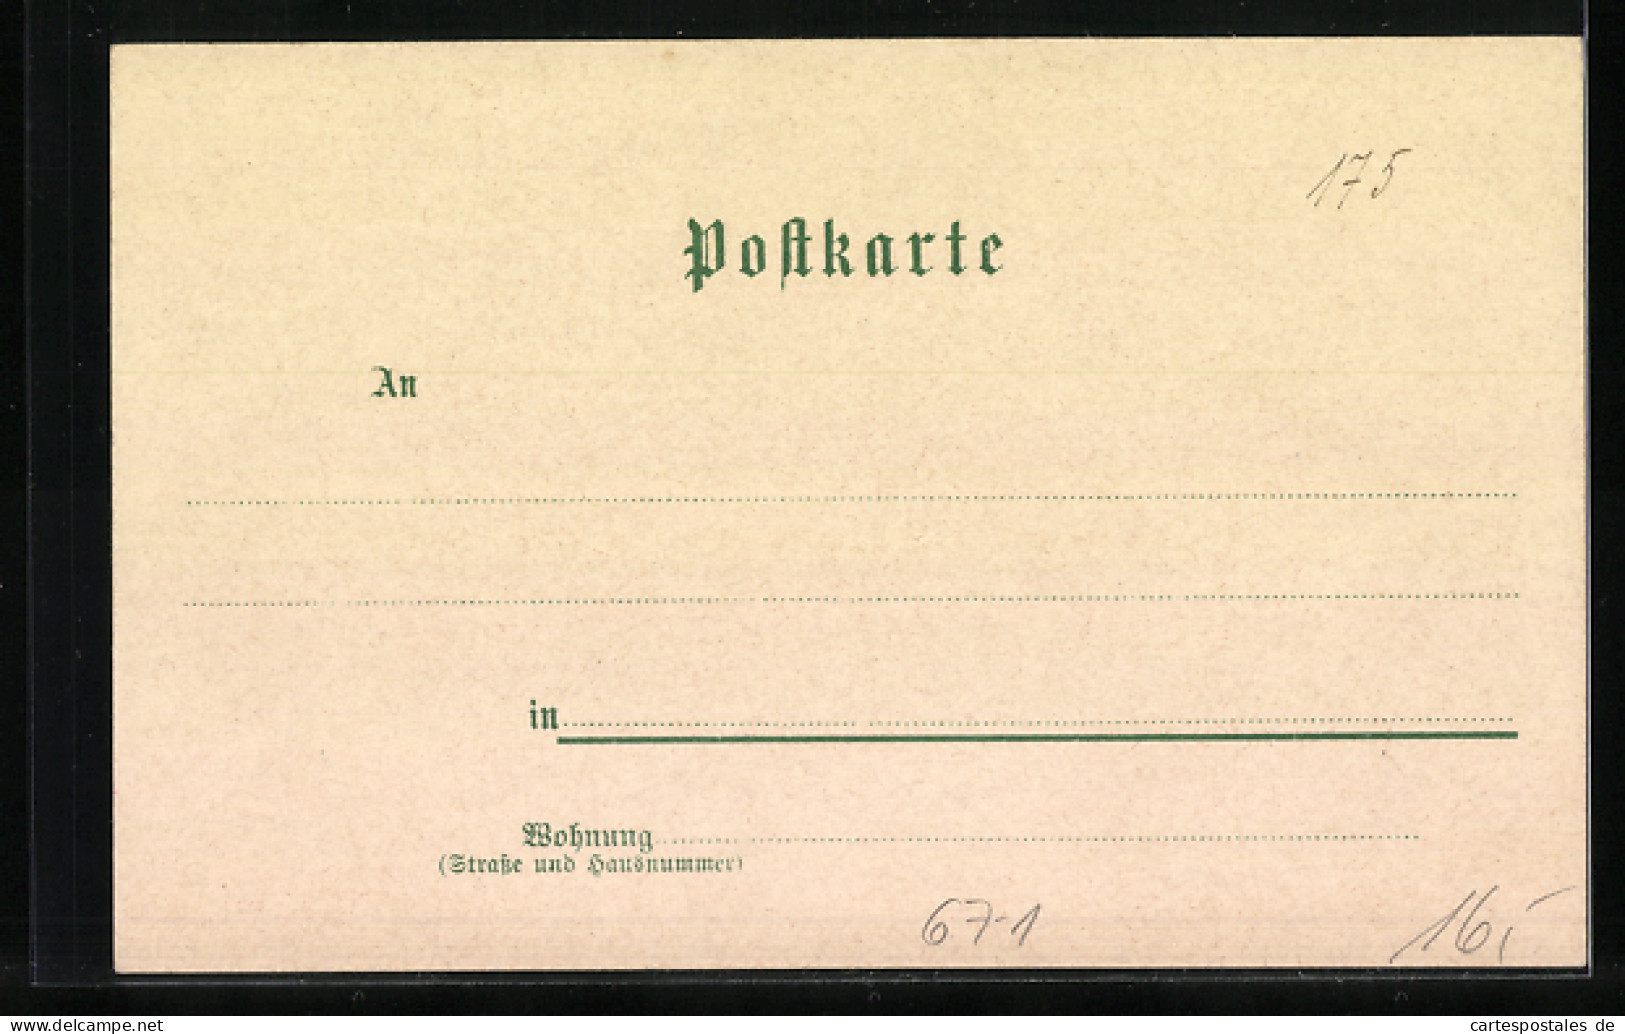 Lithographie Heilbronn, Industrie-Gewerbe- U. Kunst-Ausstellung 1897  - Exhibitions